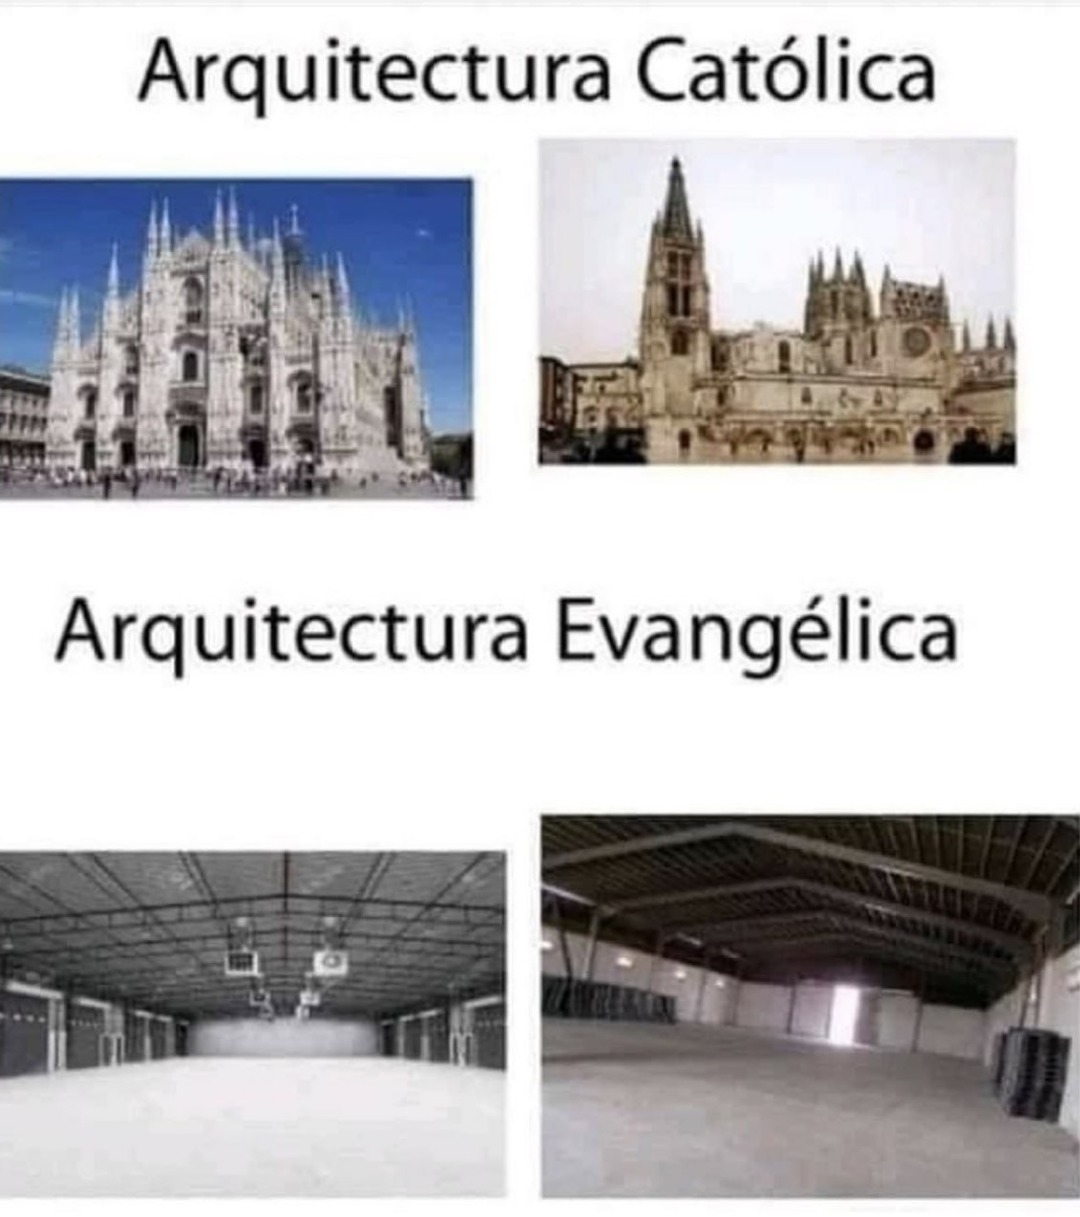 Arquitectura católica vs evangélica - meme